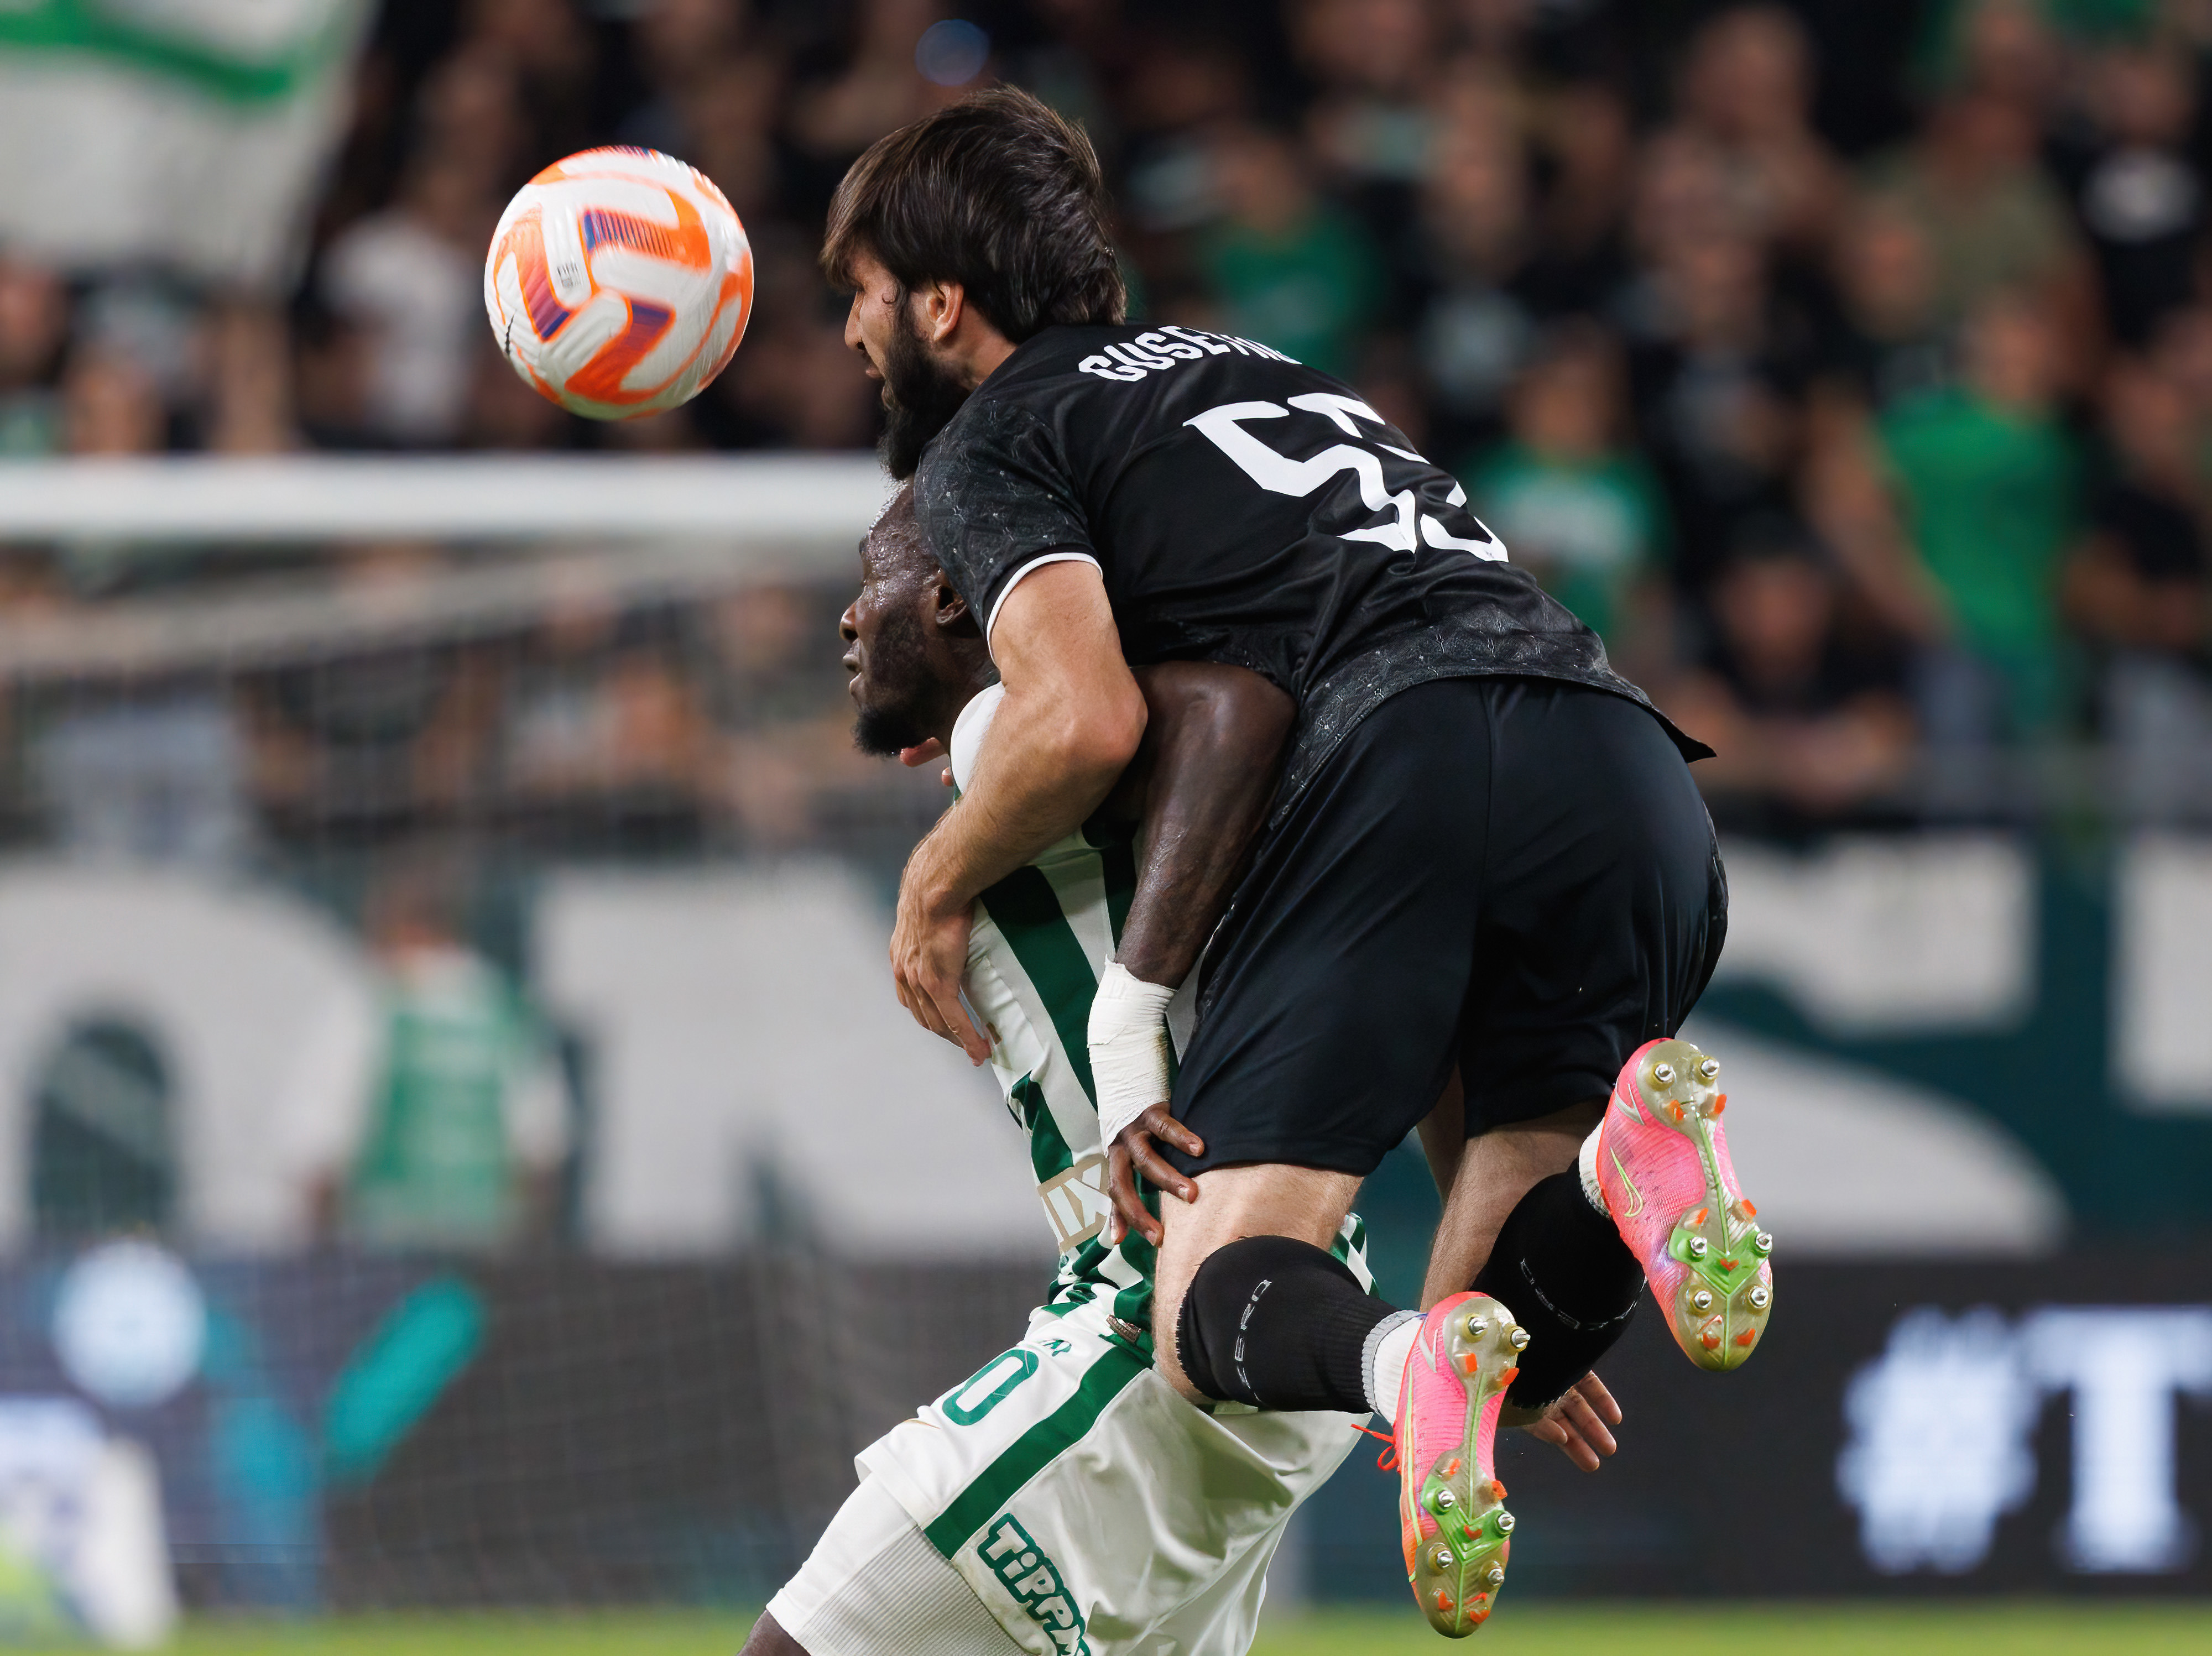 Badavi Huseynov of Qarabag challenges Franck Boli of Ferencvarosi.